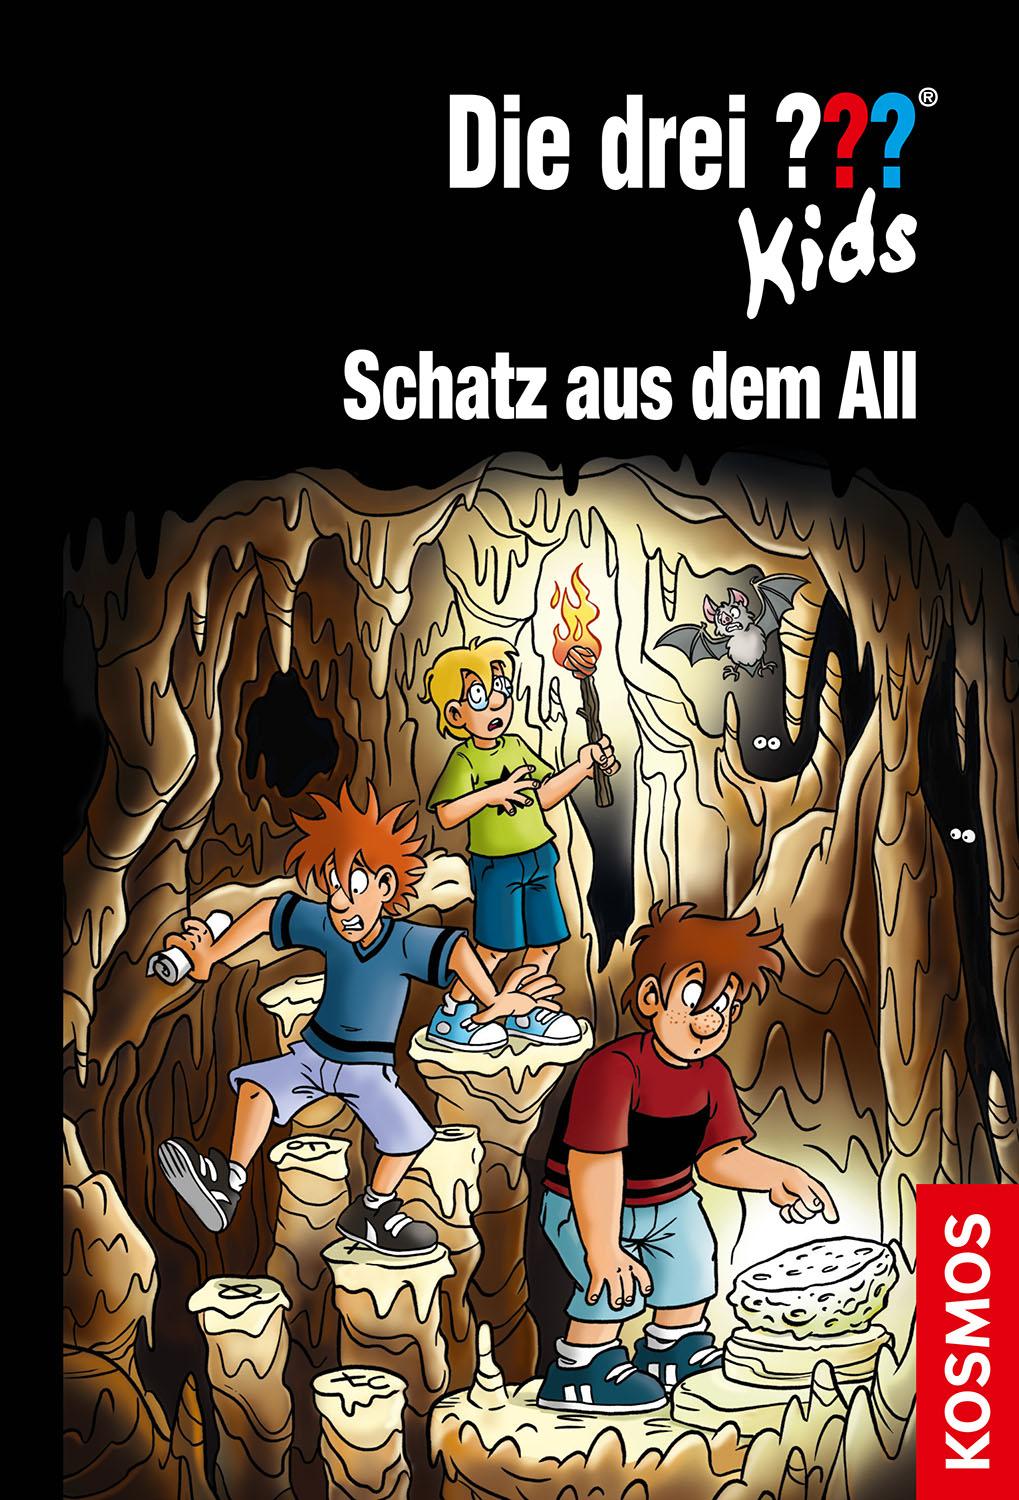 Die drei ''' Kids Buch: Schatz aus dem All